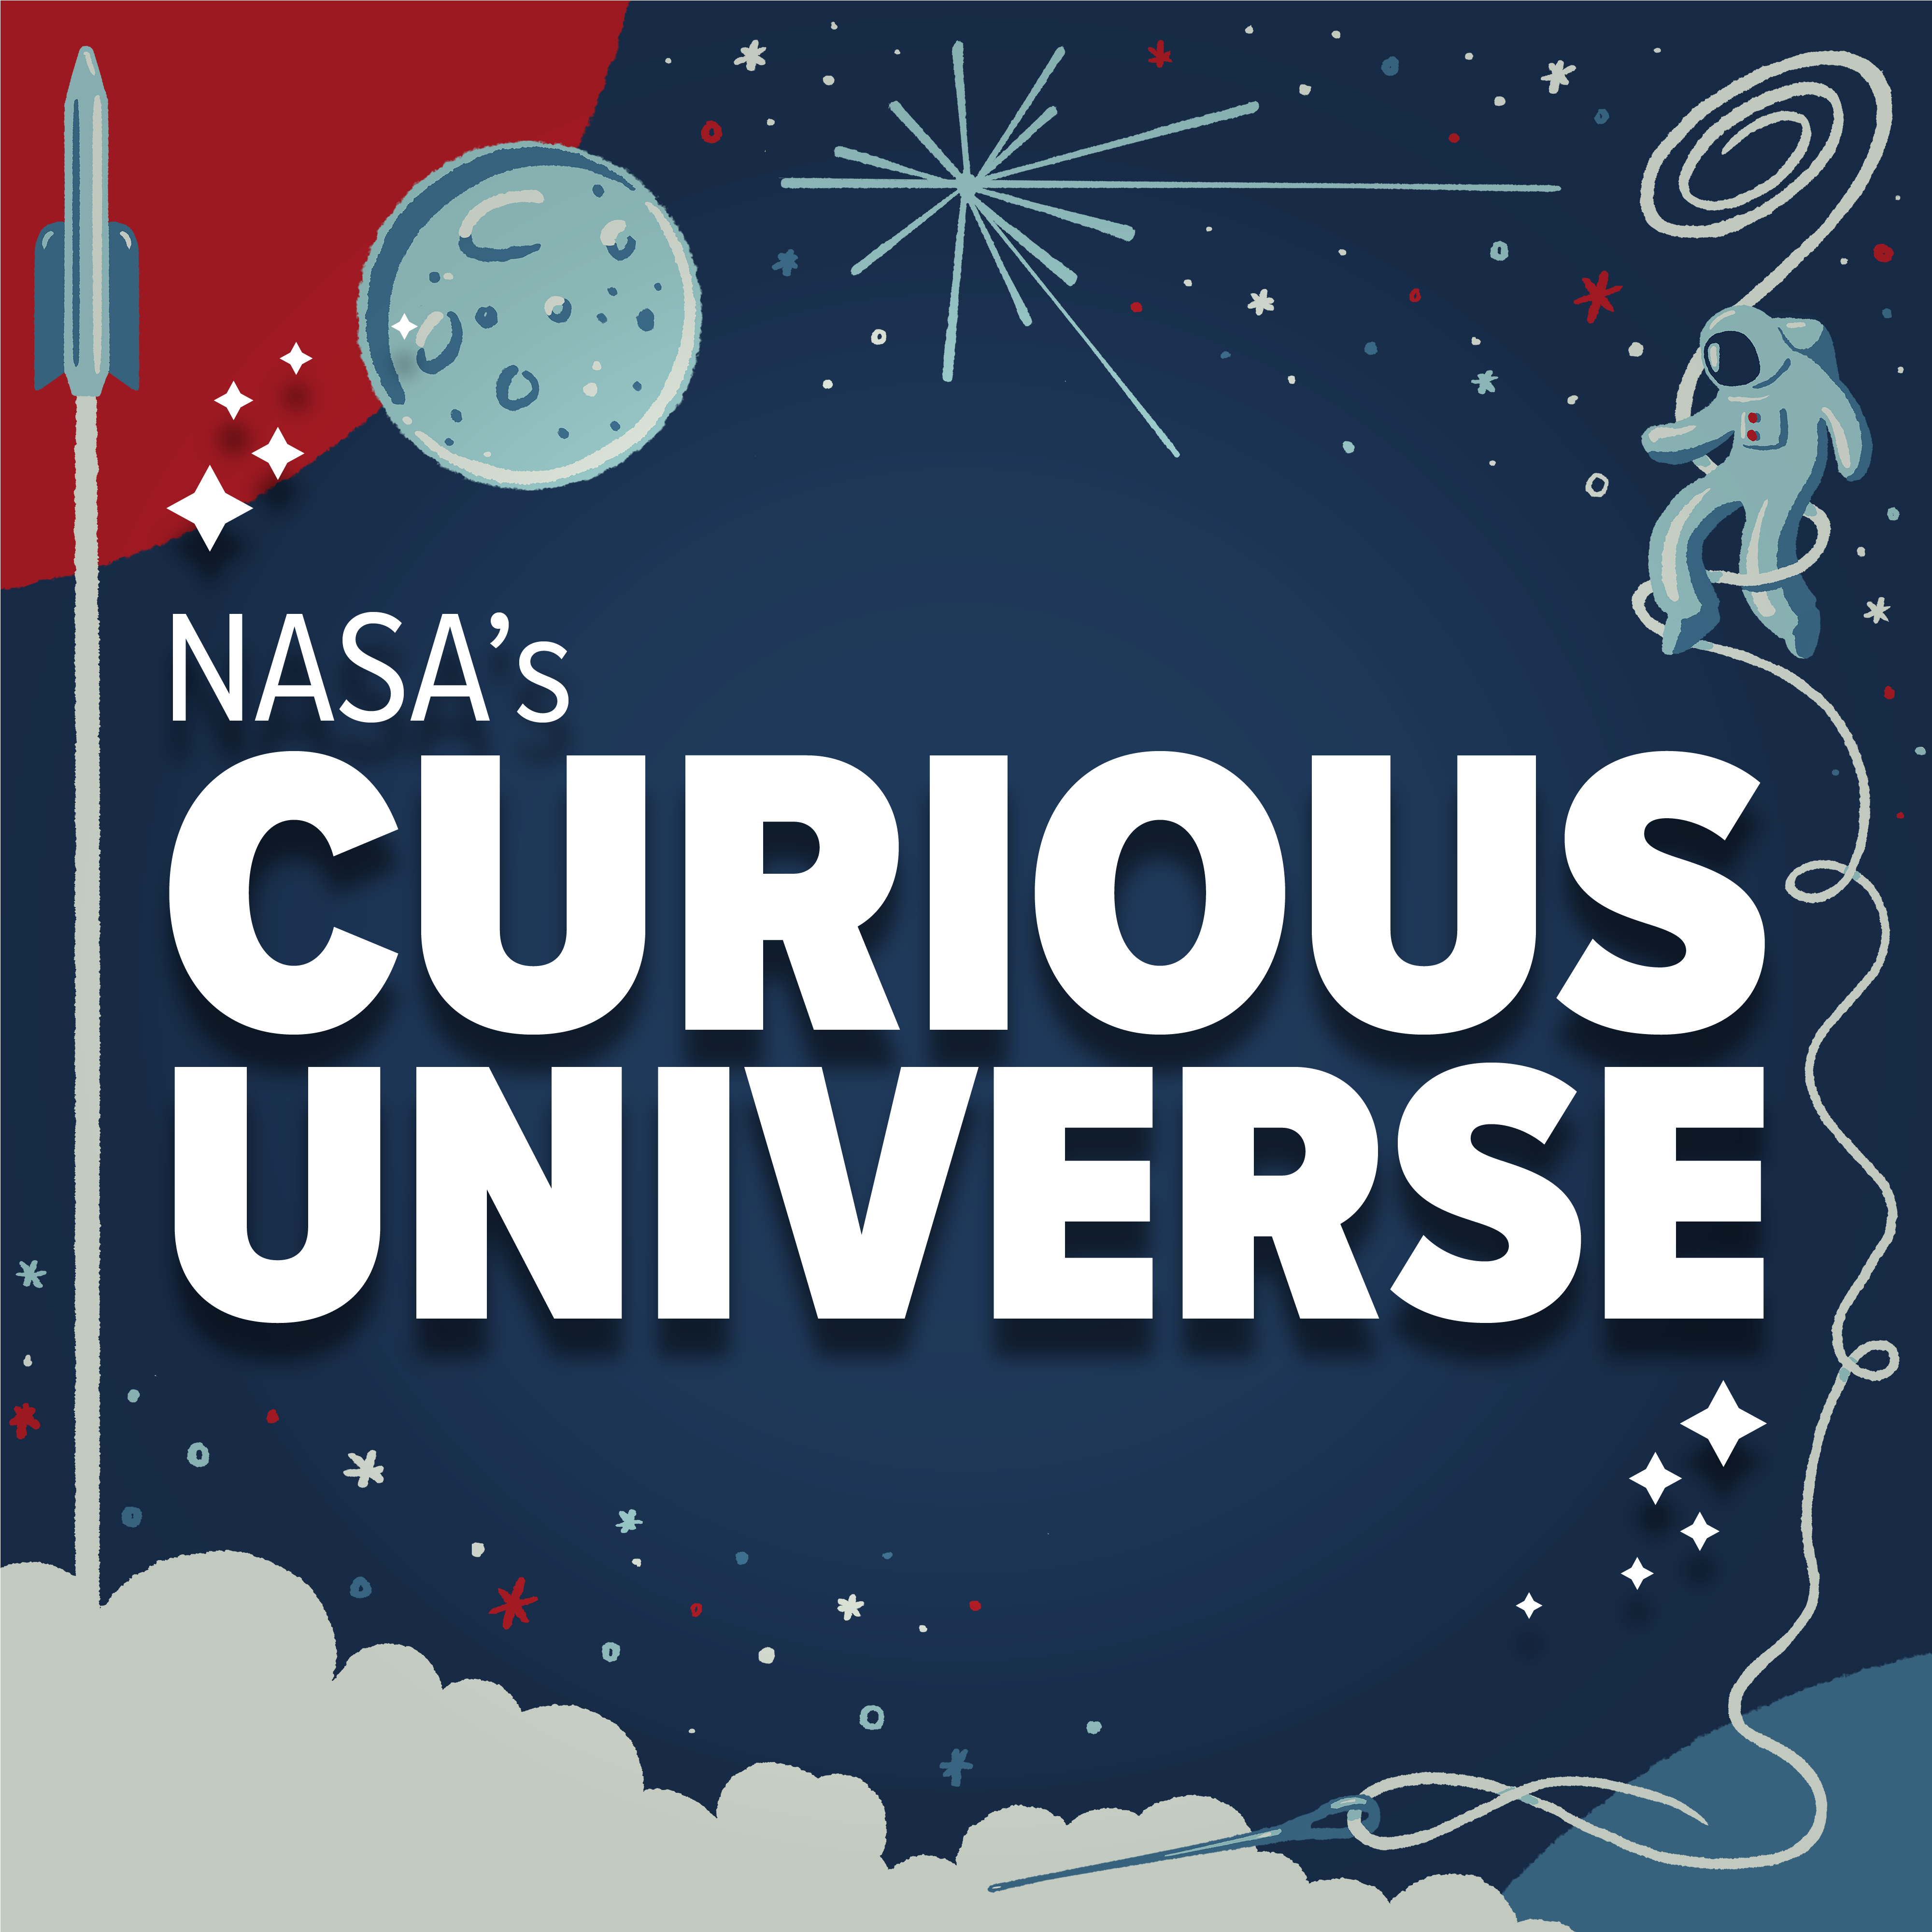 NASA's Curious Universe Image